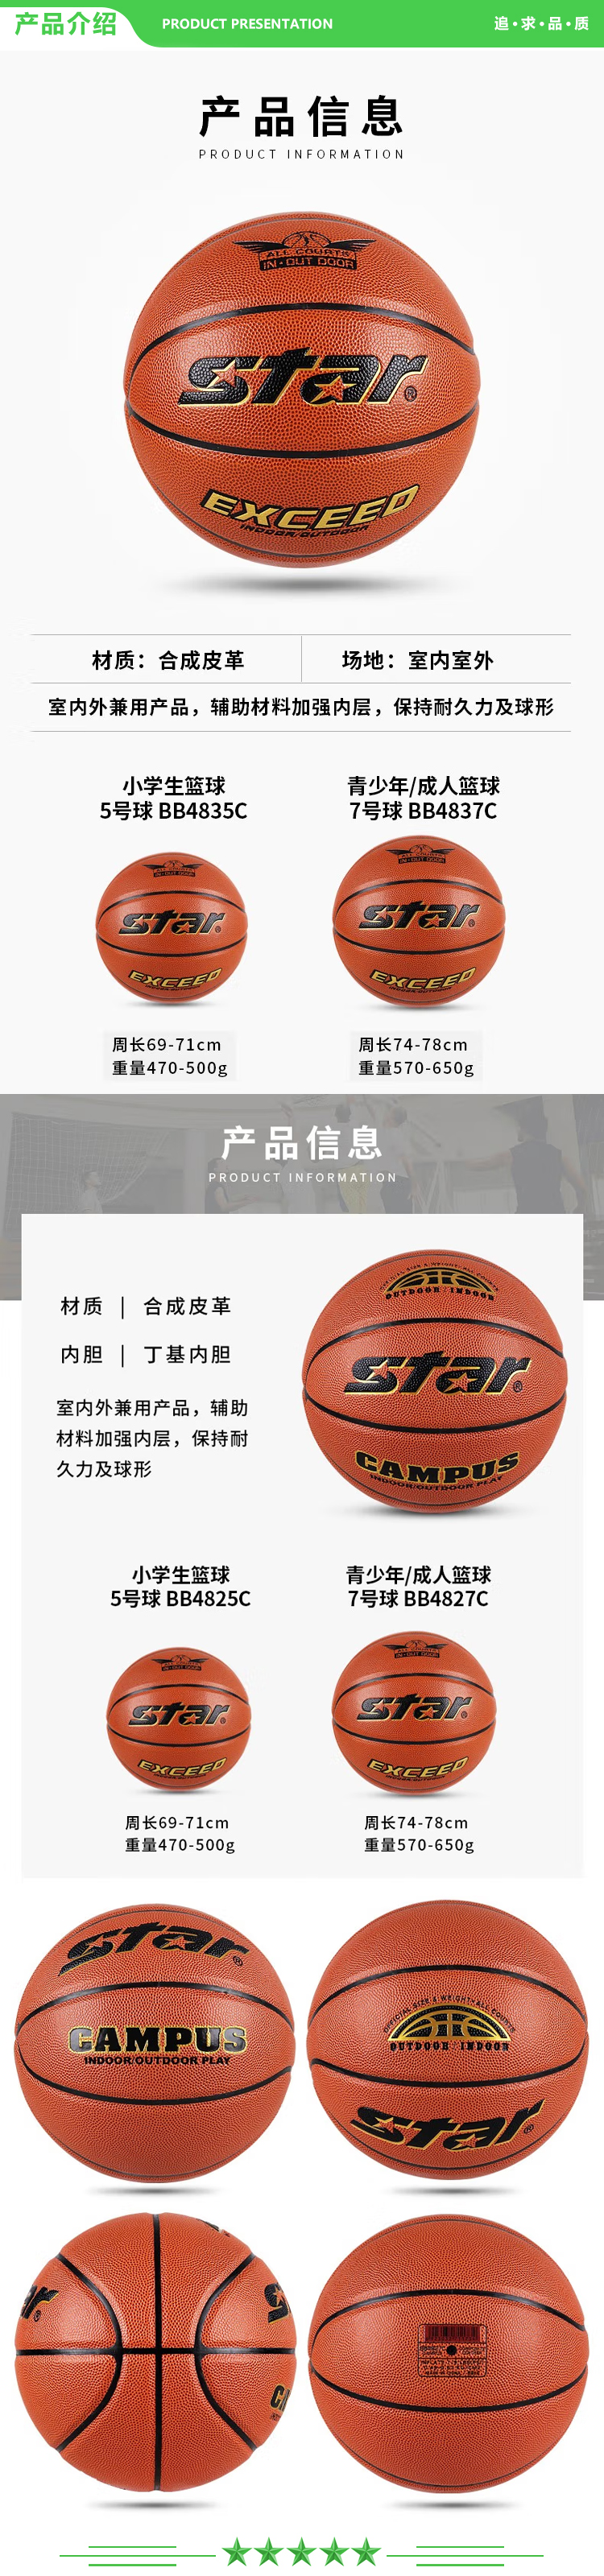 世达 star BB4827C(7号成人用球) 篮球中学生耐磨PU篮球室内外初中生专用球 2.jpg